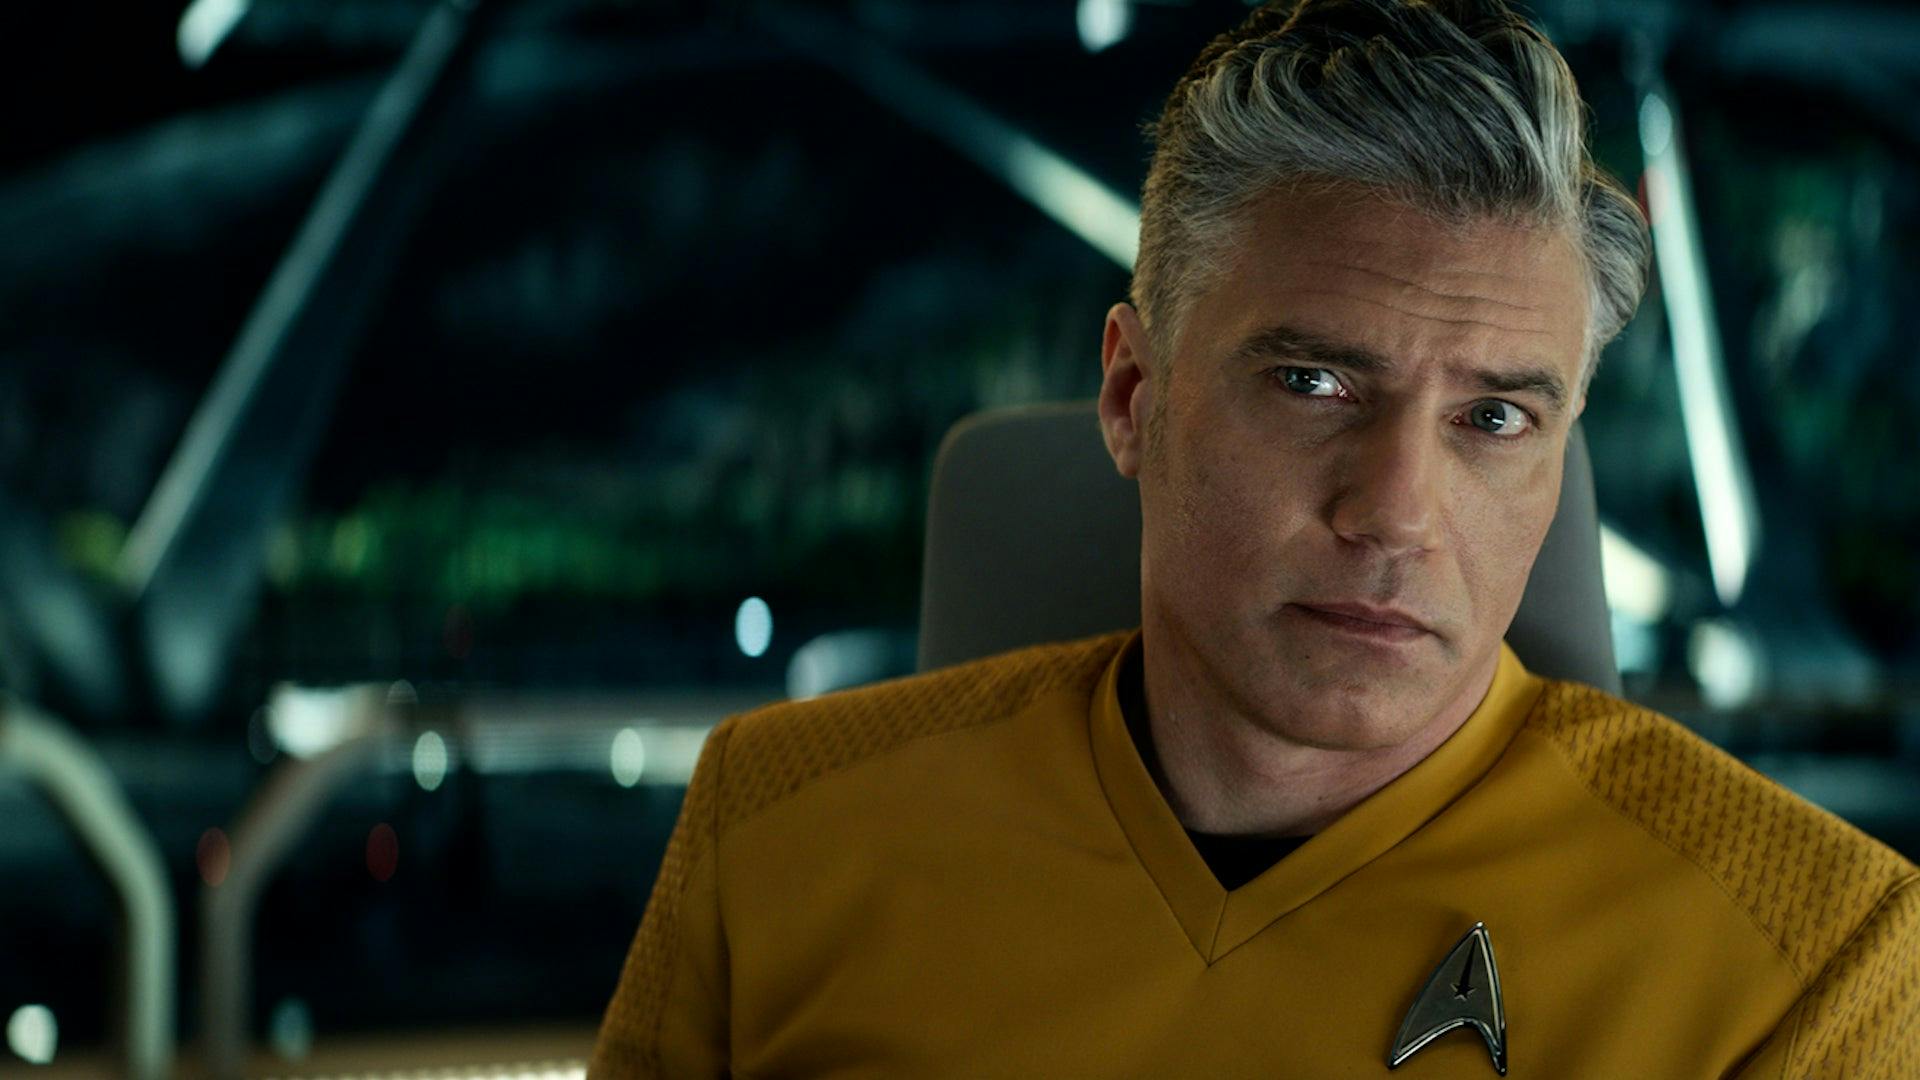 Anson Mount as Captain Pike in Star Trek: Strange New Worlds.